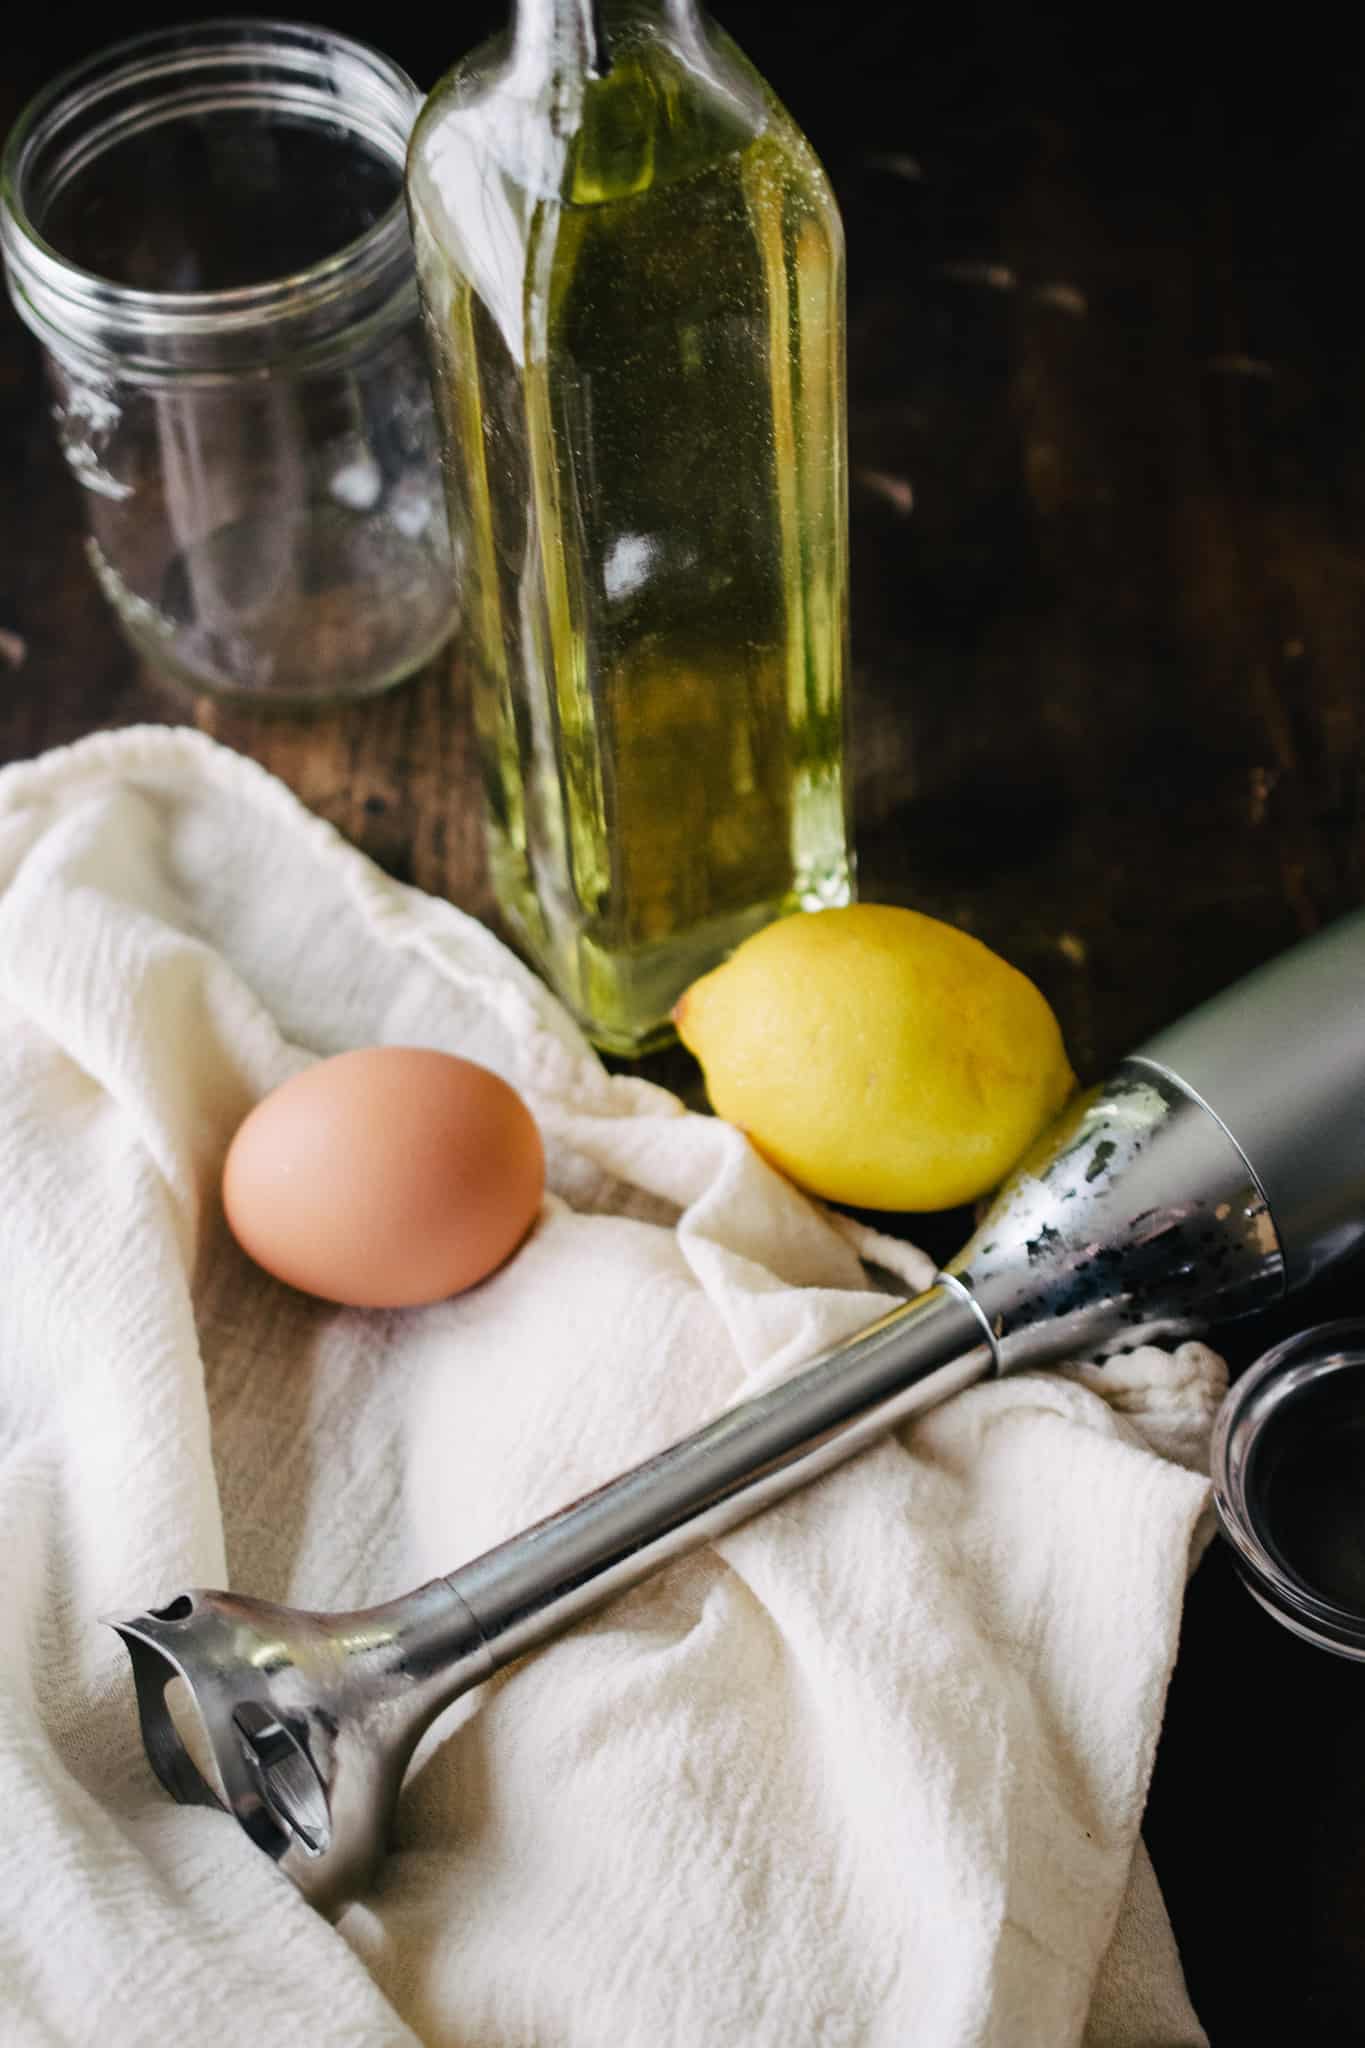 immersion blender, egg, oil, lemon juice to make homemade mayonnaise